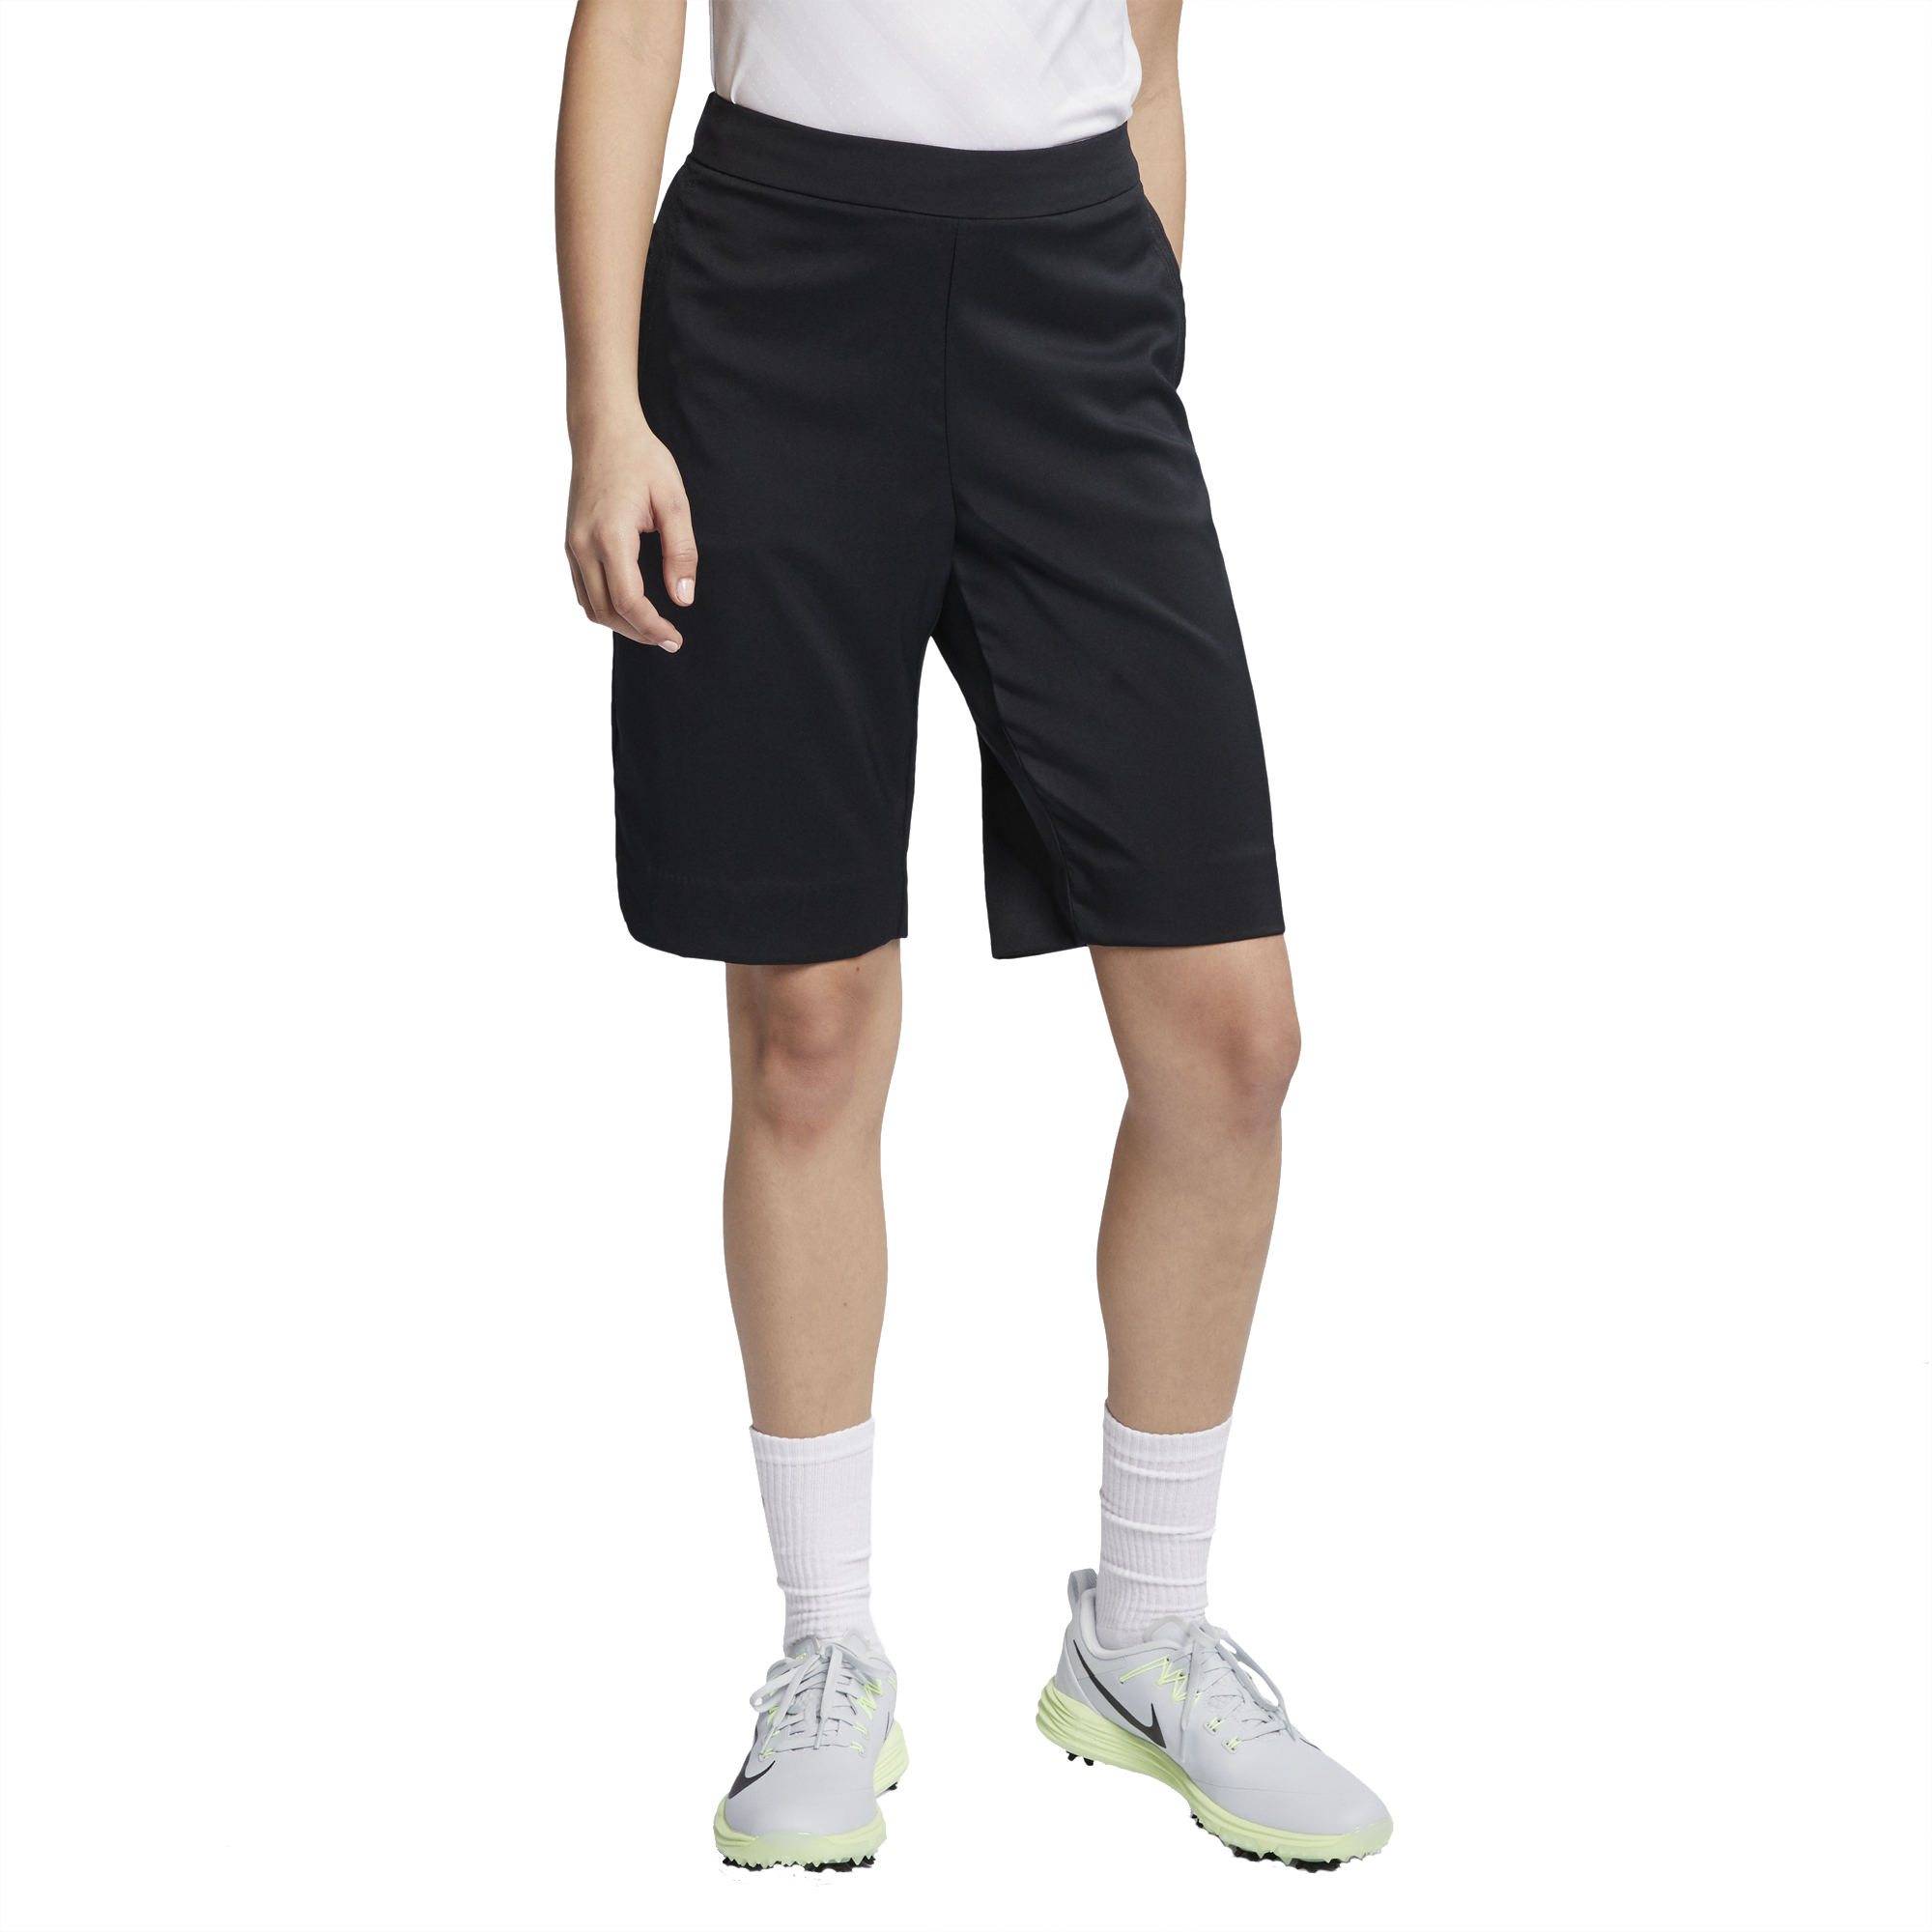 Nike ACG Dri-Fit шорты. Шорты Nike Golf 2004. Nike Golf shorts. Nike Golf шорты.